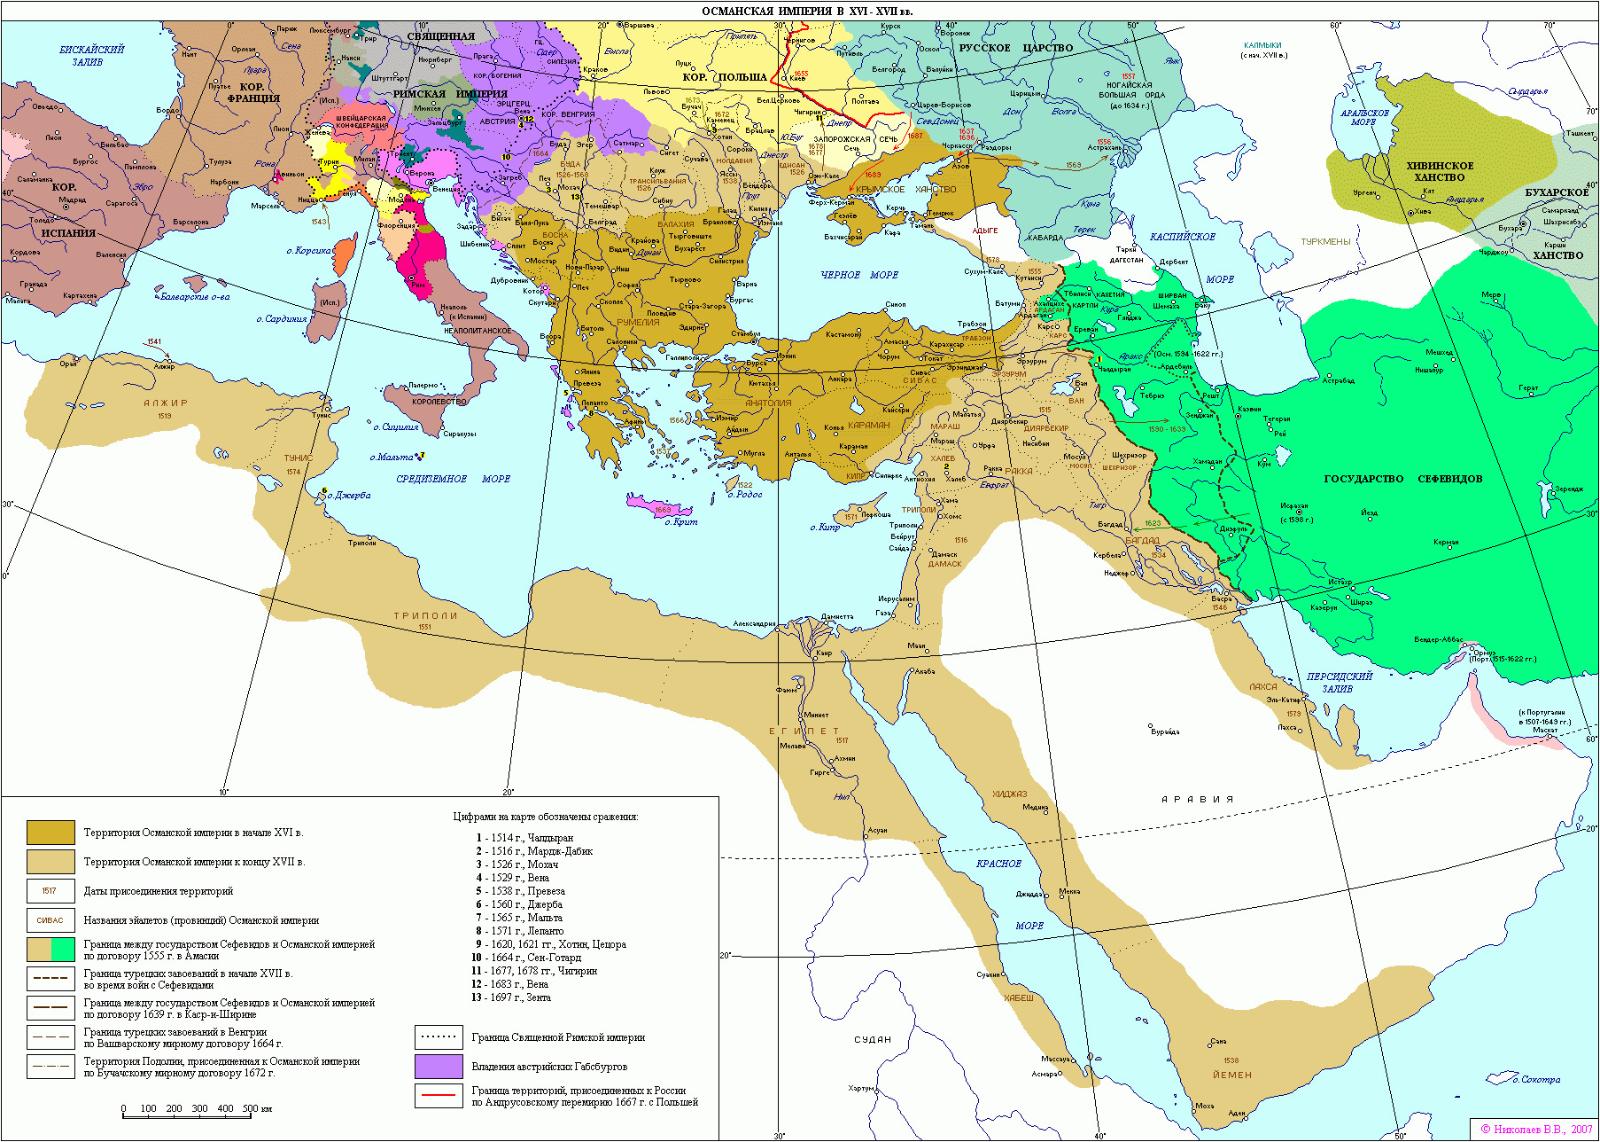 Завоевания осман в XVI – XVII веках.